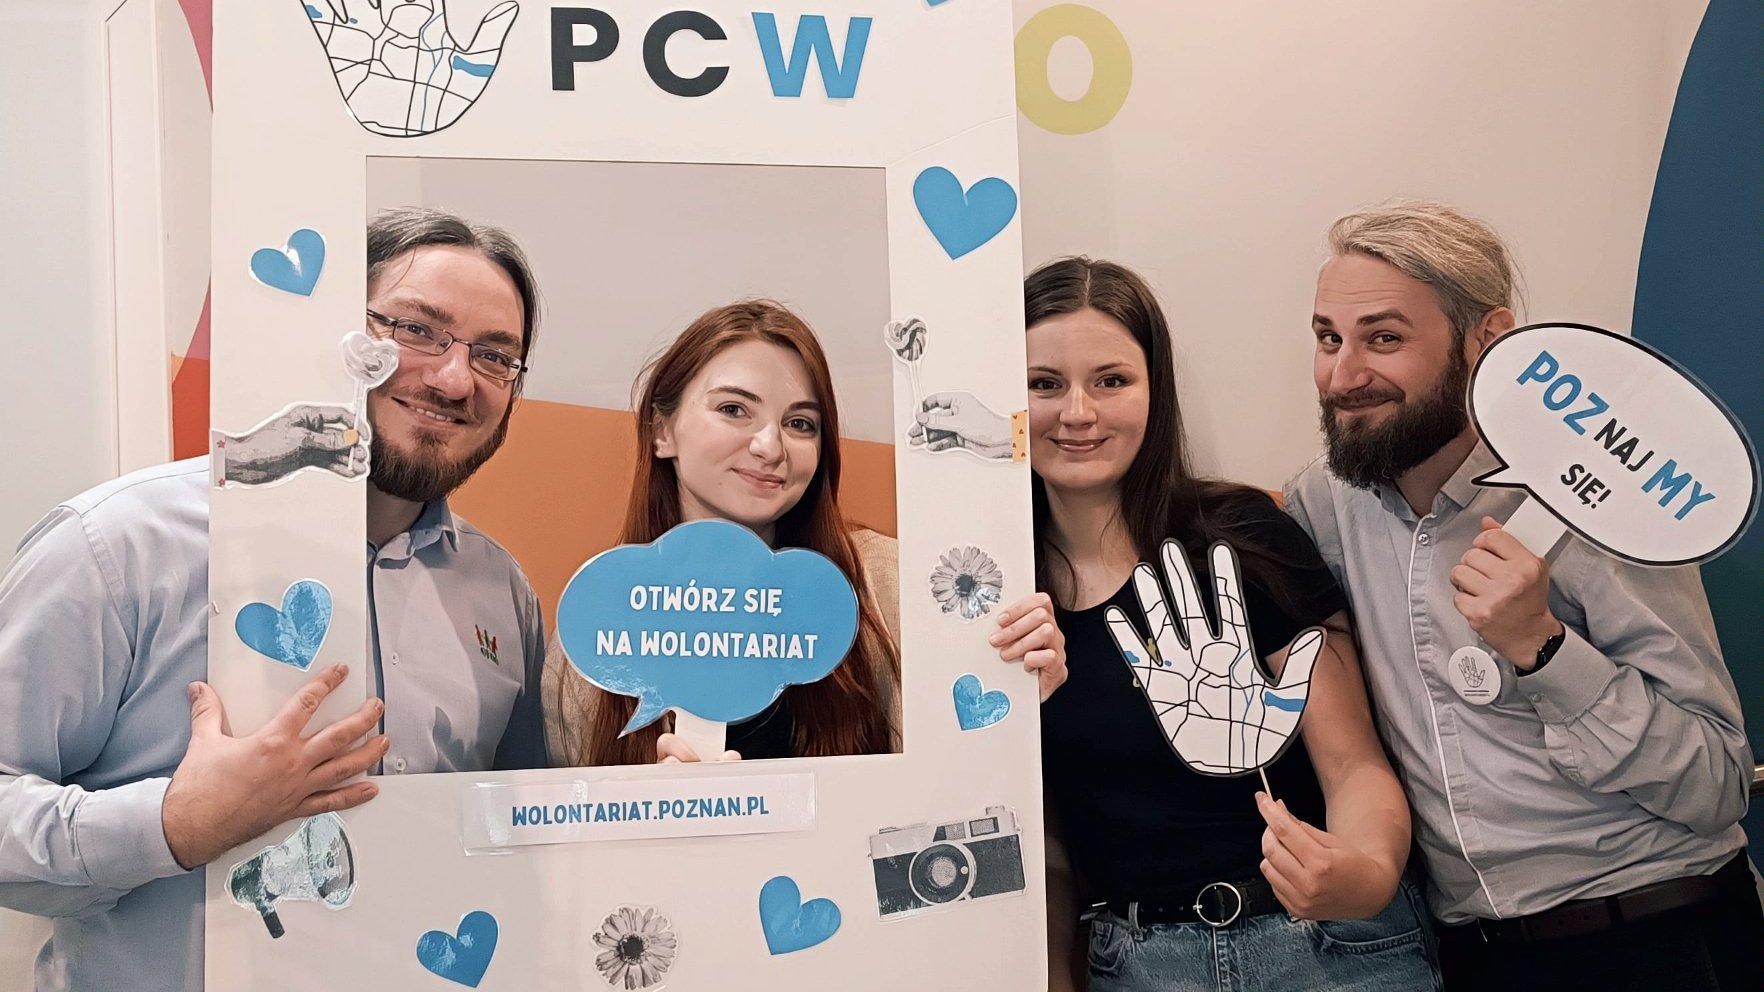 Grafika przedstawiająca cztery uśmiechnięte osoby: dwie kobiety i dwóch mężczyzn trzymających w ręku ramkę z napisem Poznańskie Centrum Wolontariatu, w tym jedna osoba trzyma hasło związane z wolontariatem.